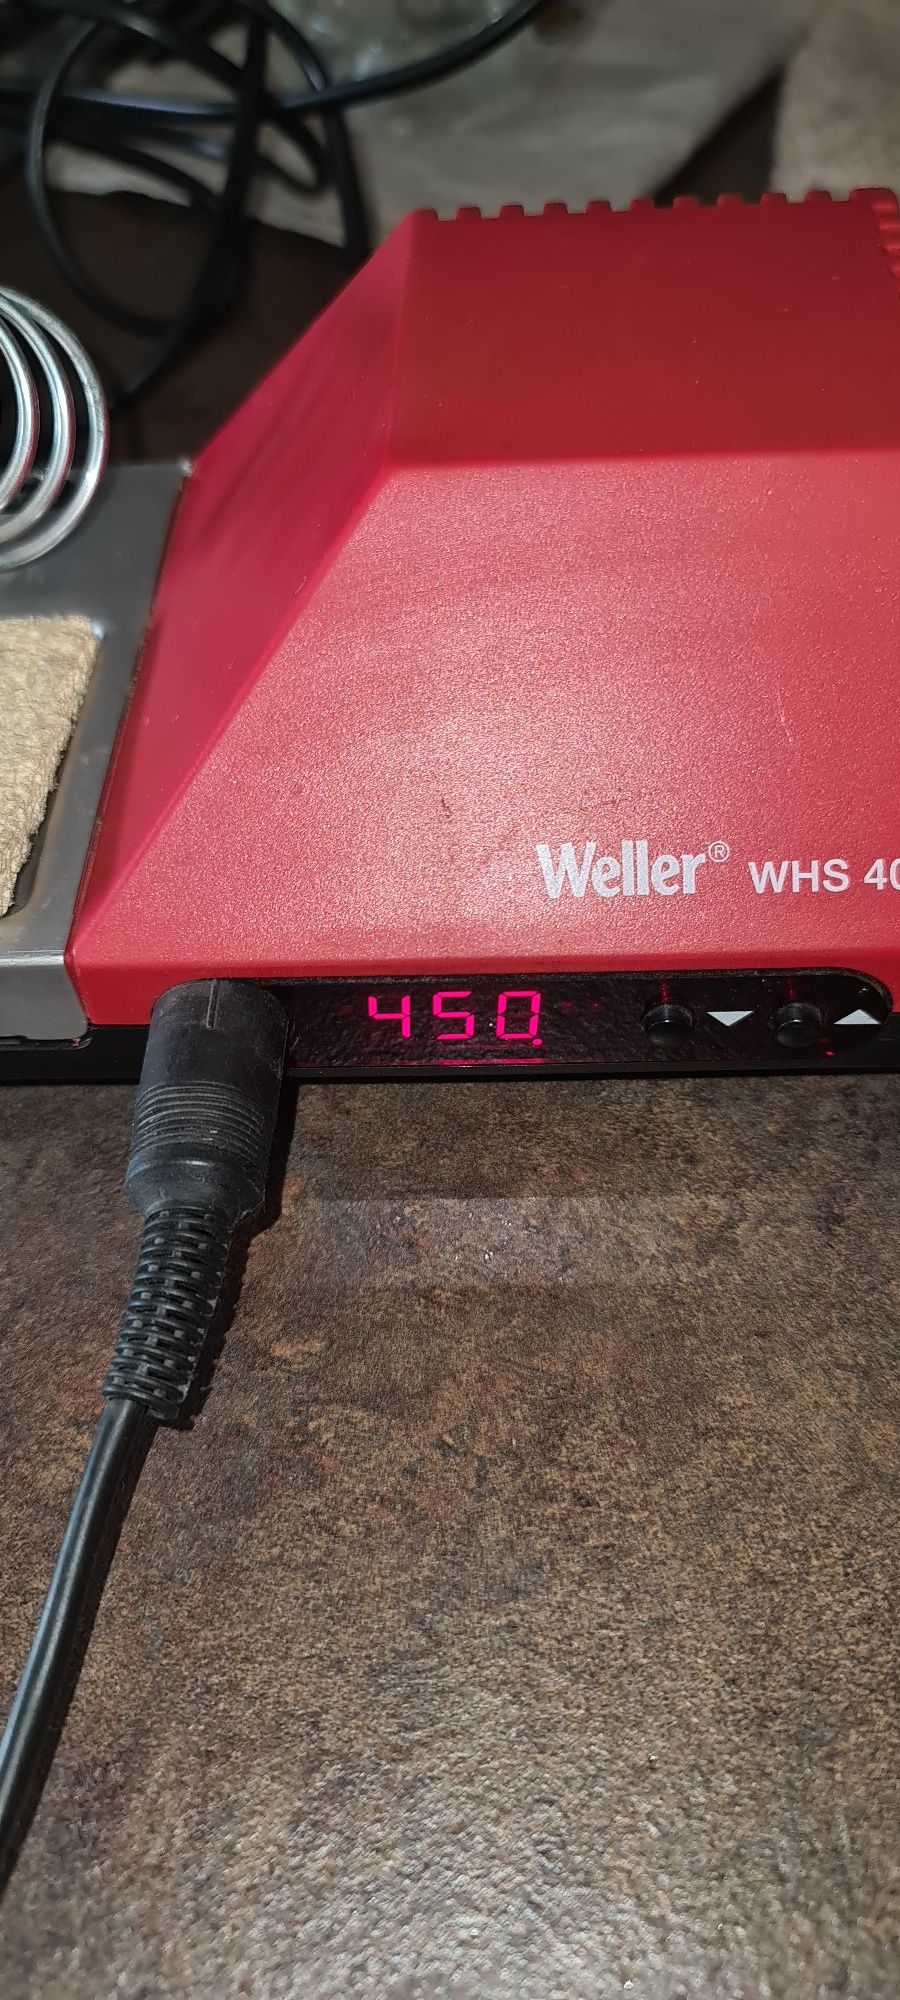 Vand statie de lipit Weller cu control reglabil al temperaturii.